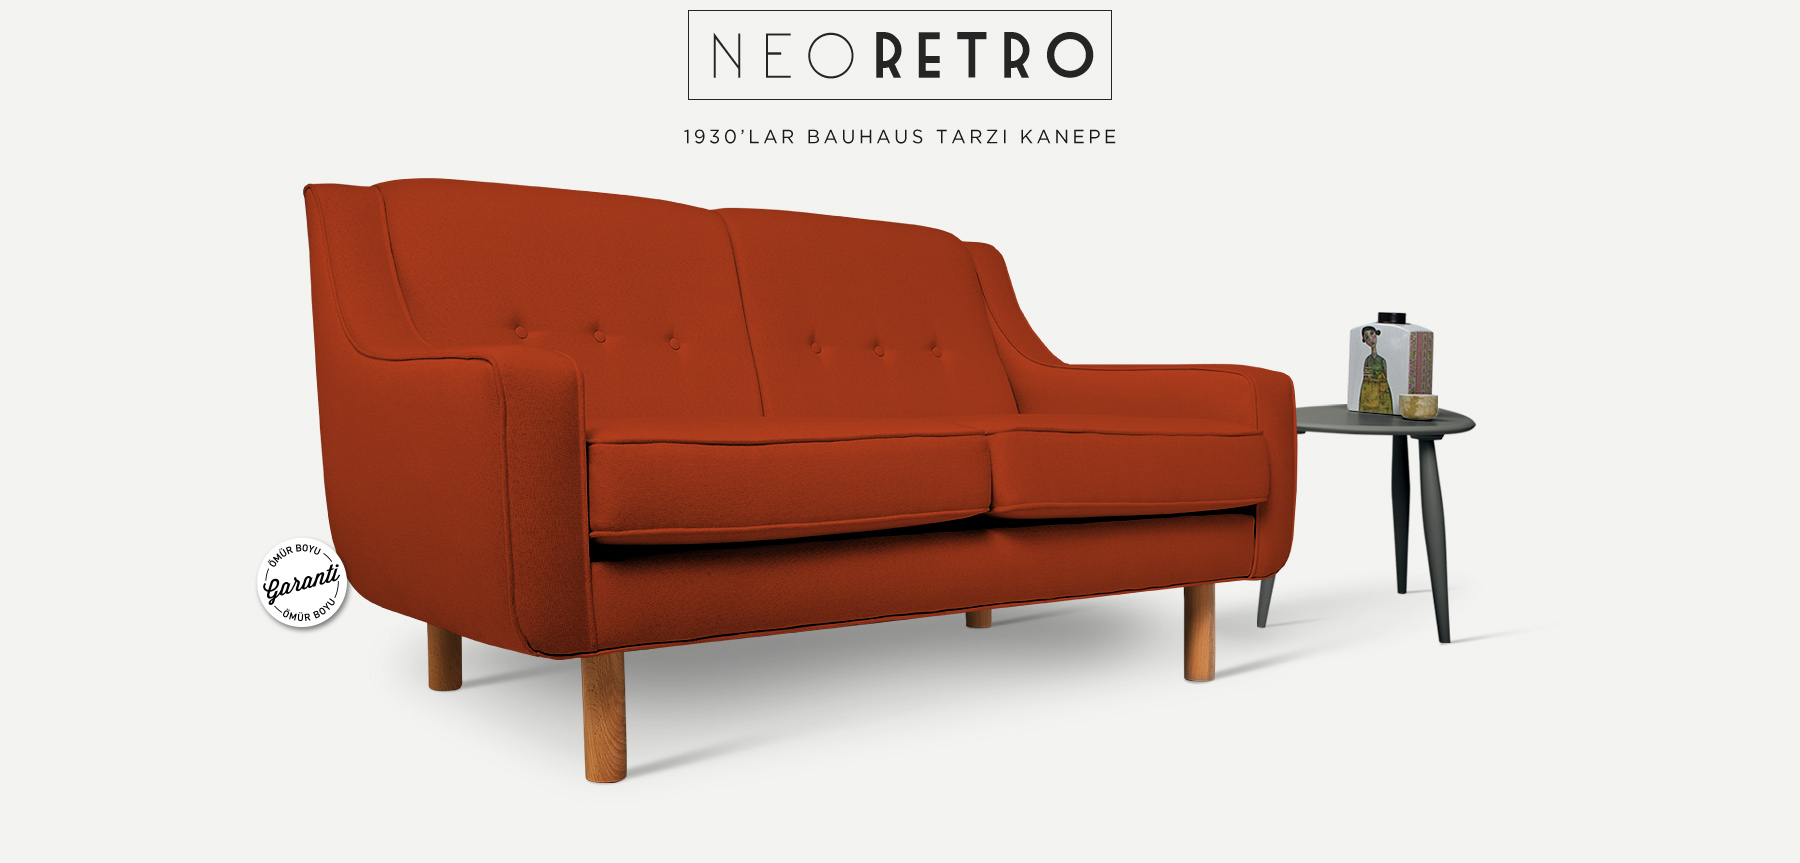 Neoretro™ İkili Turuncu Kanepe'in resmi